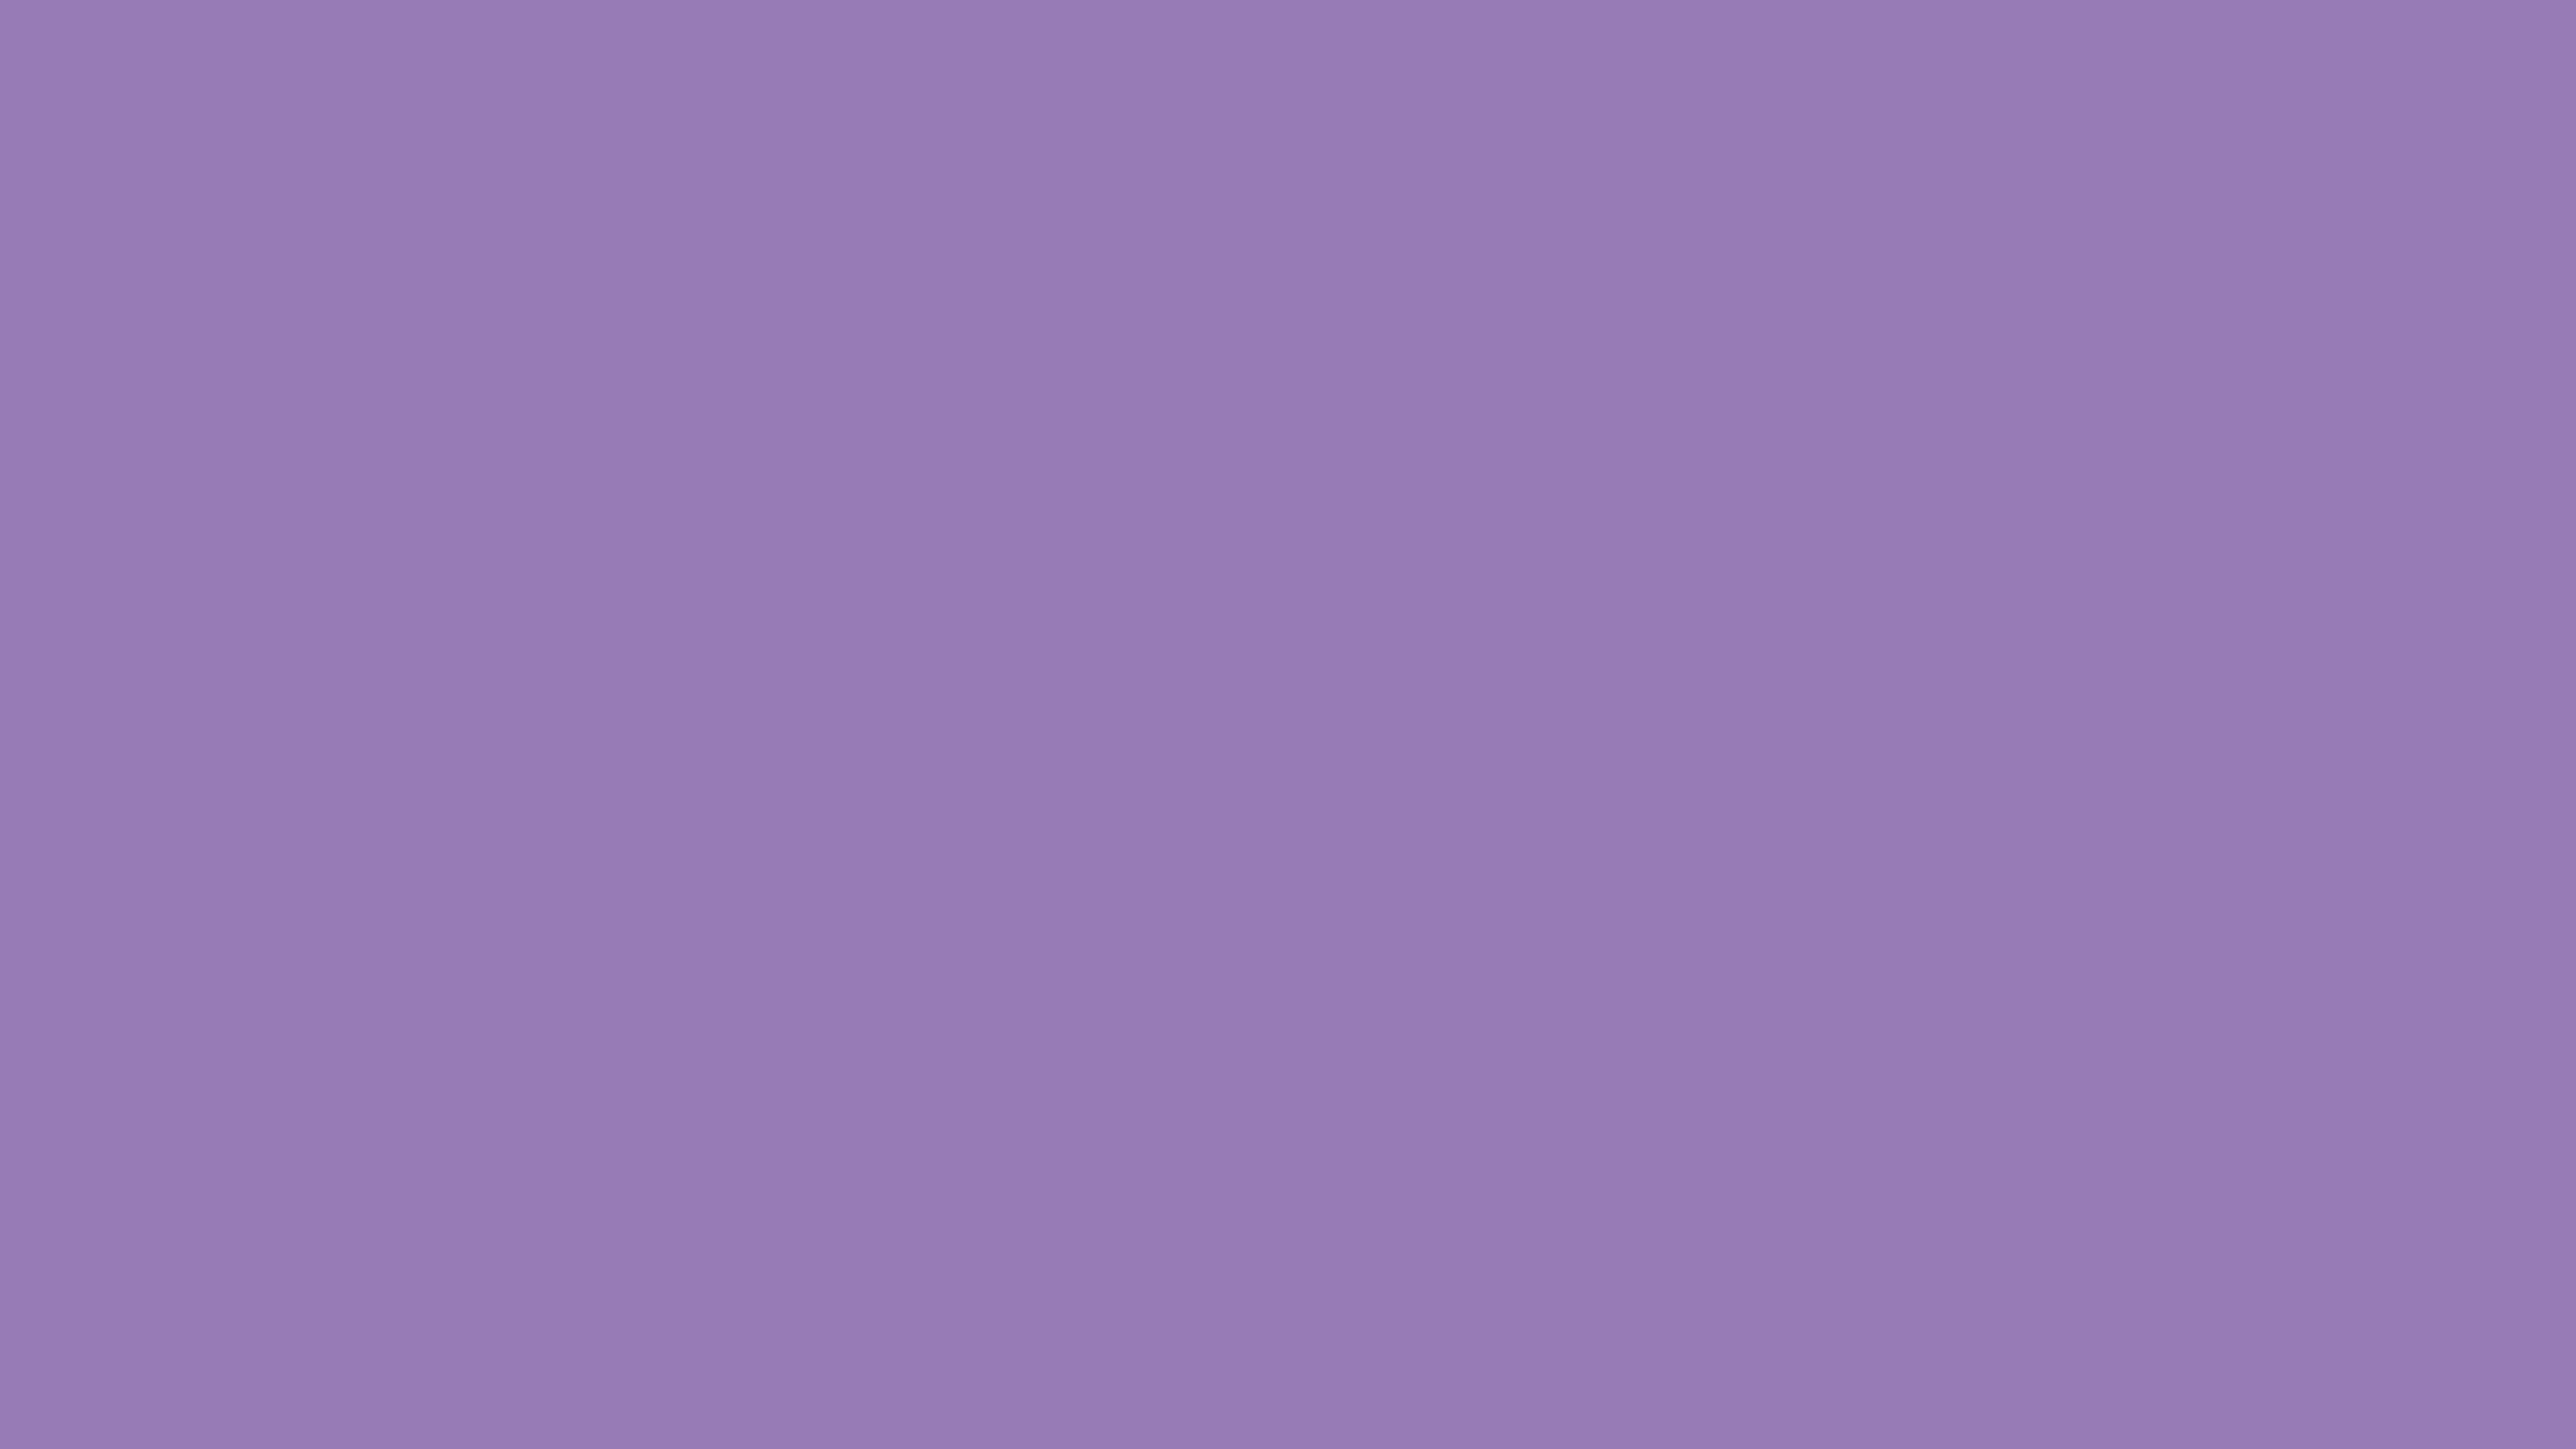 Lavender Purple Solid Color Background Wallpaper 4k 5k 8k